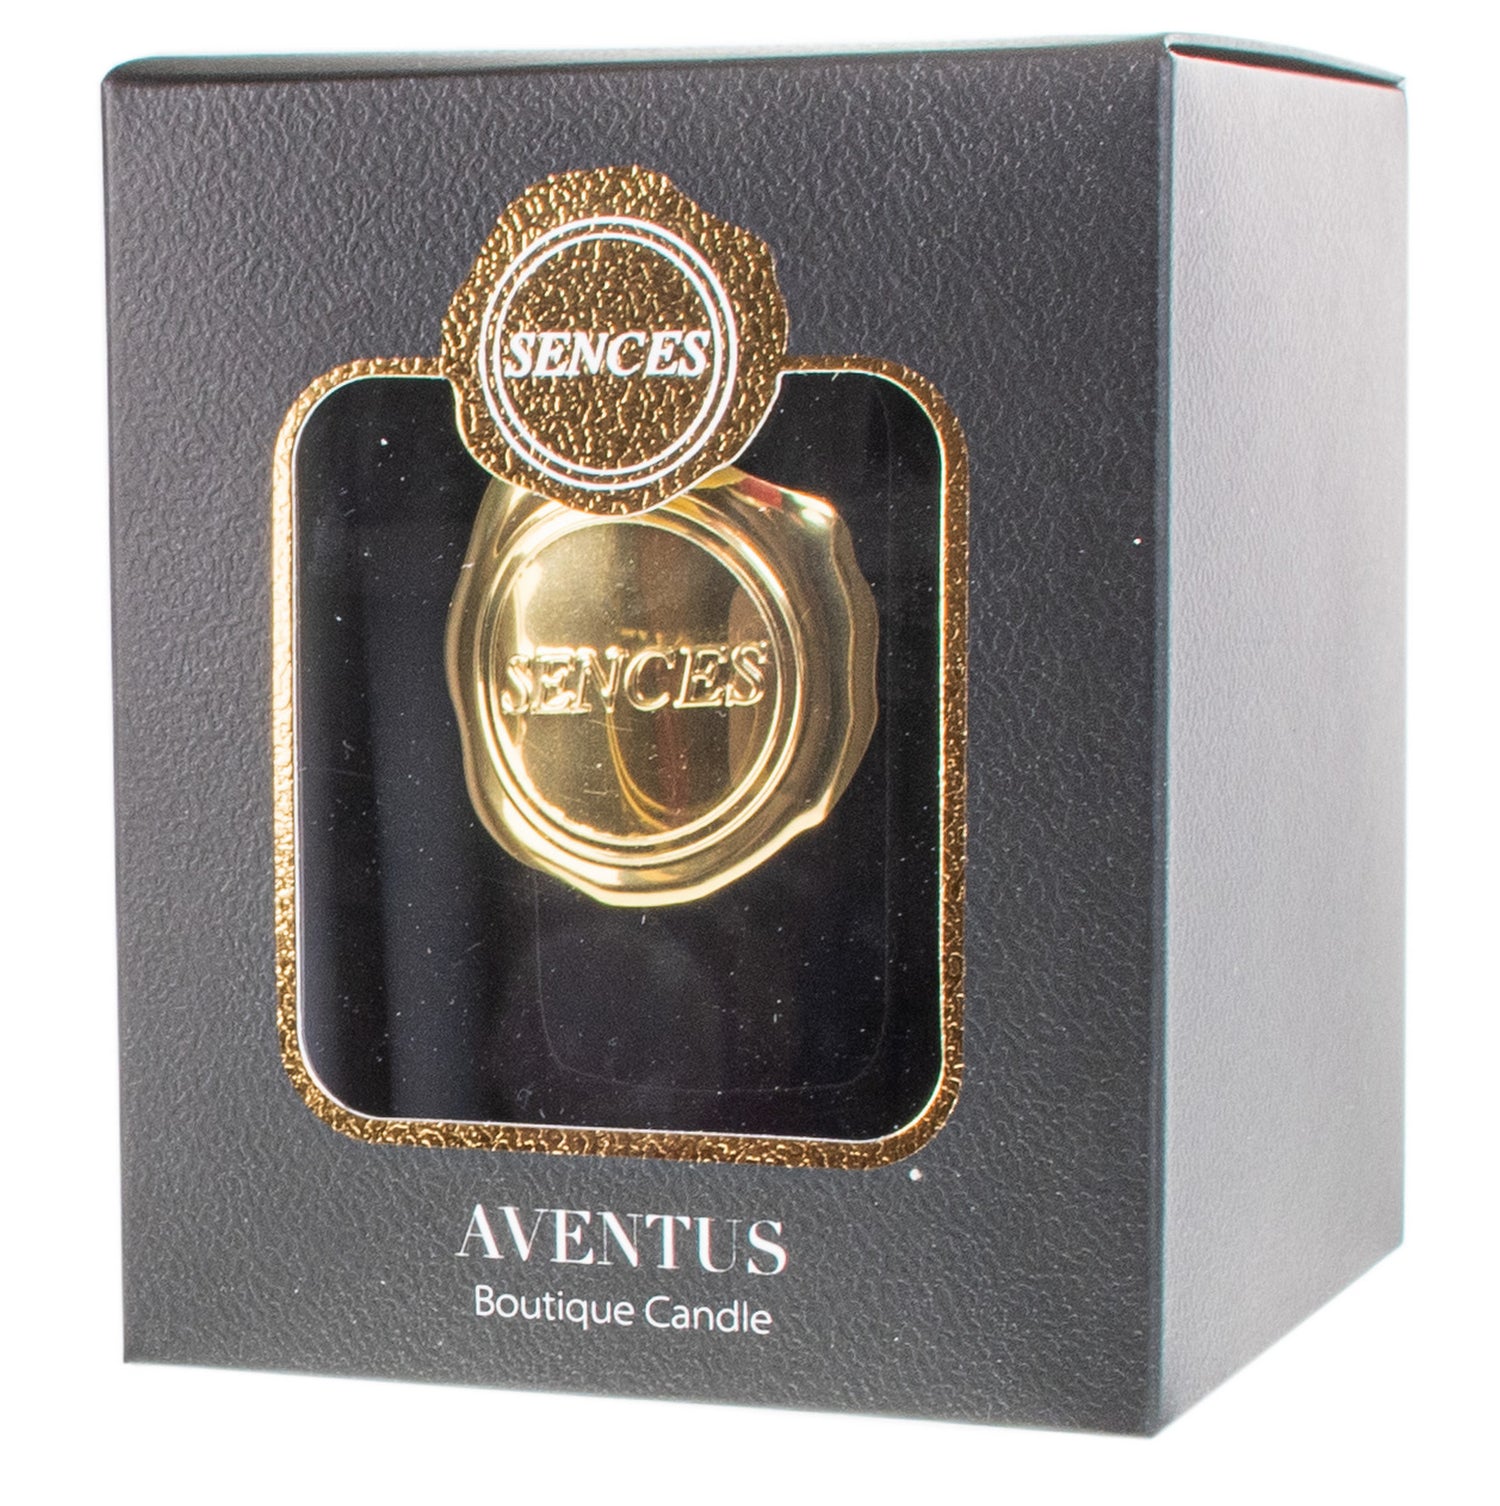 Sences Premium Luxury Candle Scented Aventus